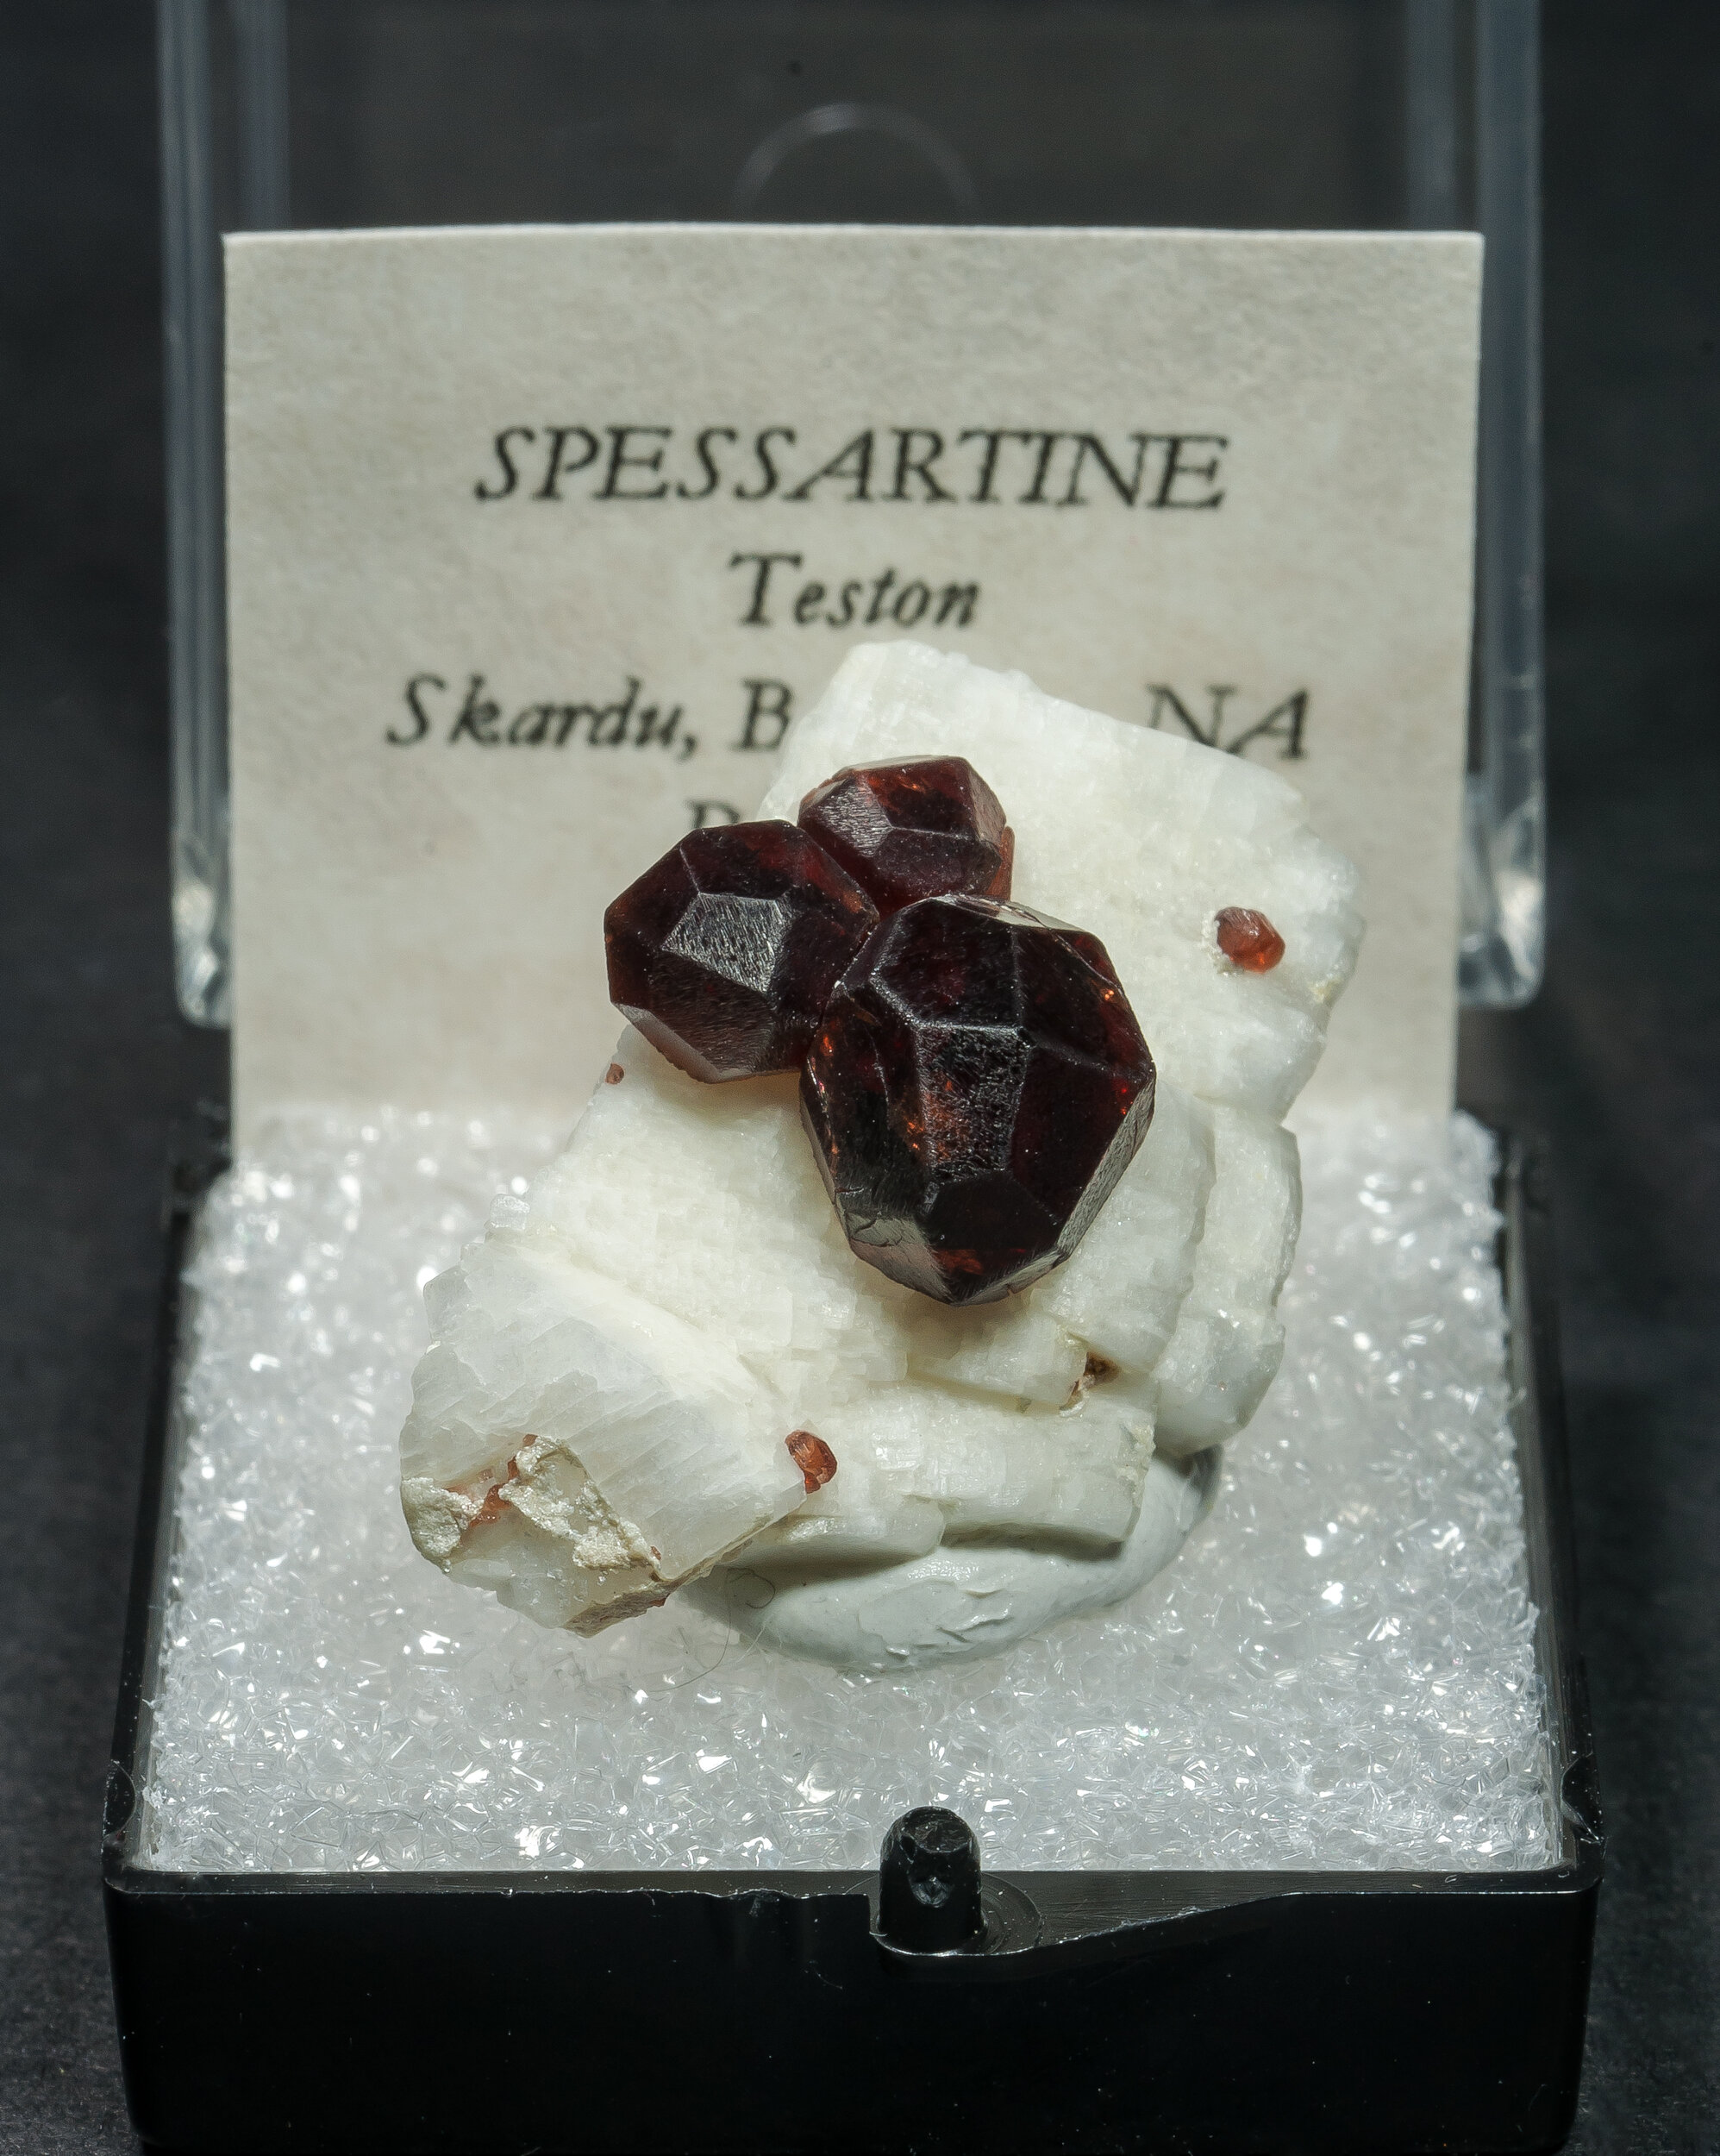 specimens/s_imagesAO0/Spessartine-TCR63AO0f.jpg